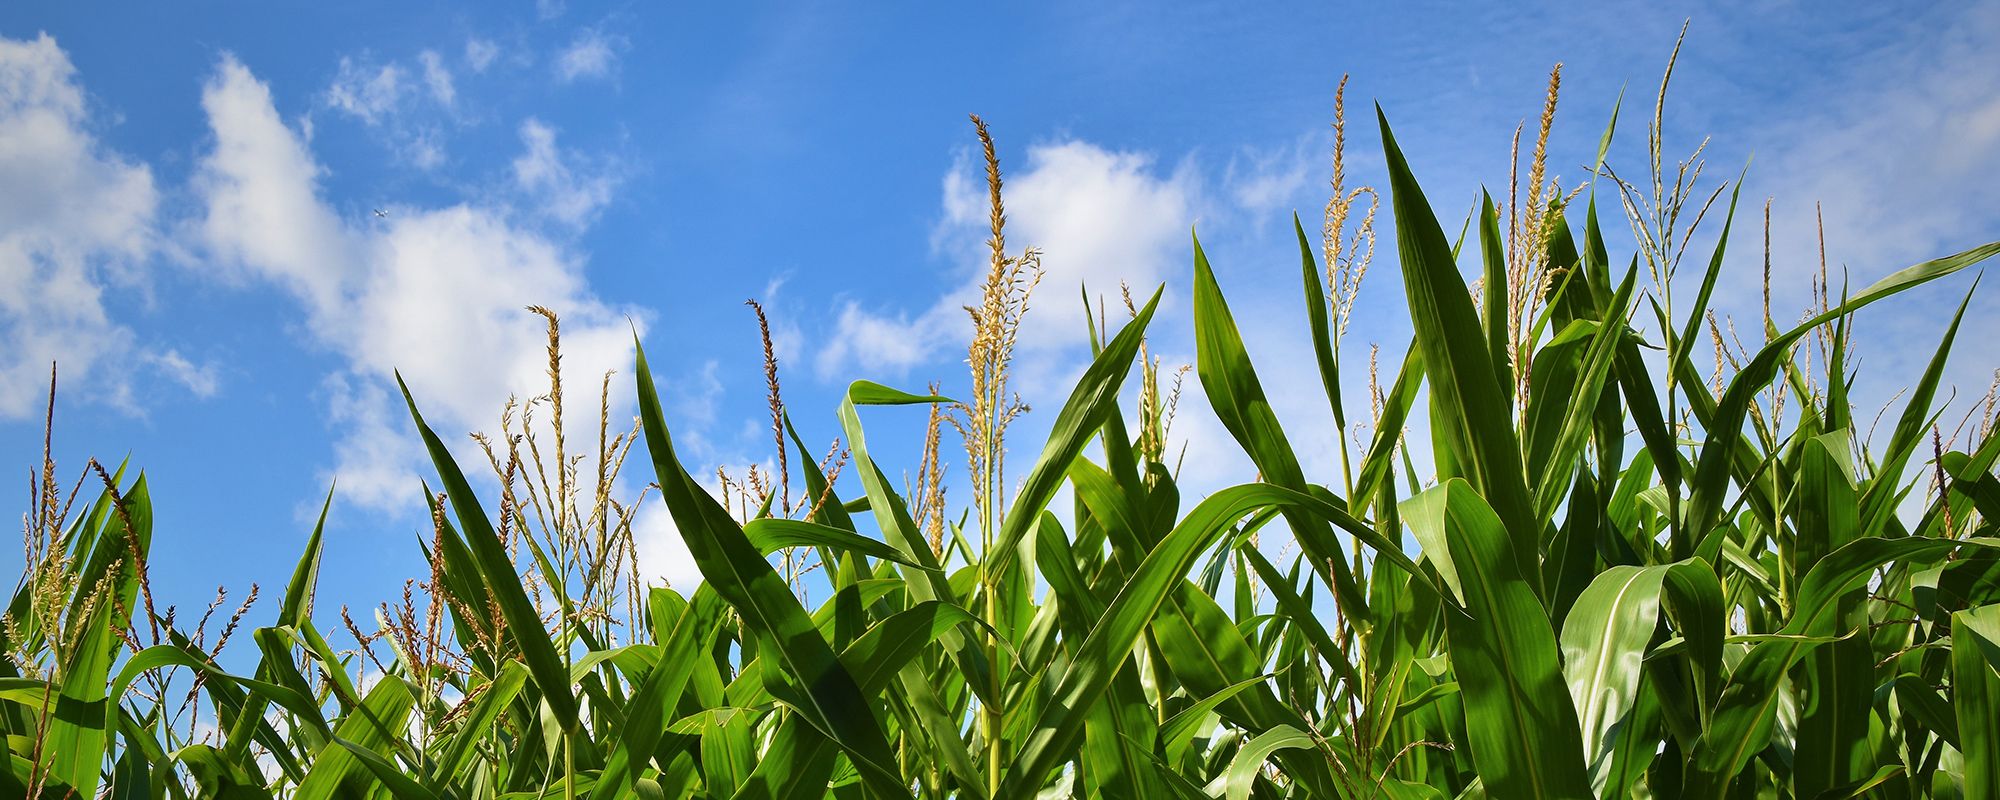 Crops maize